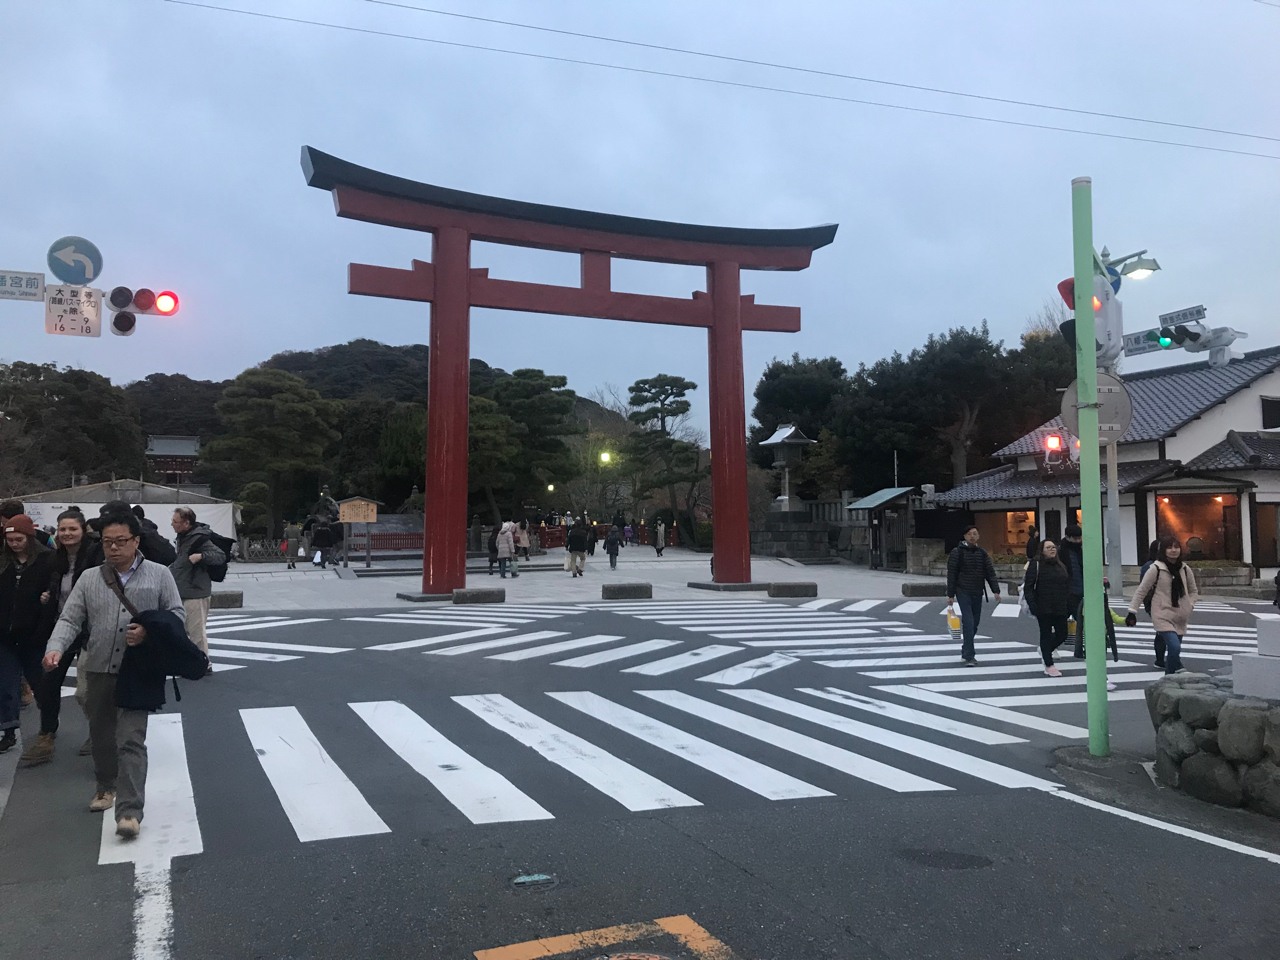 San-no Torii - Japan